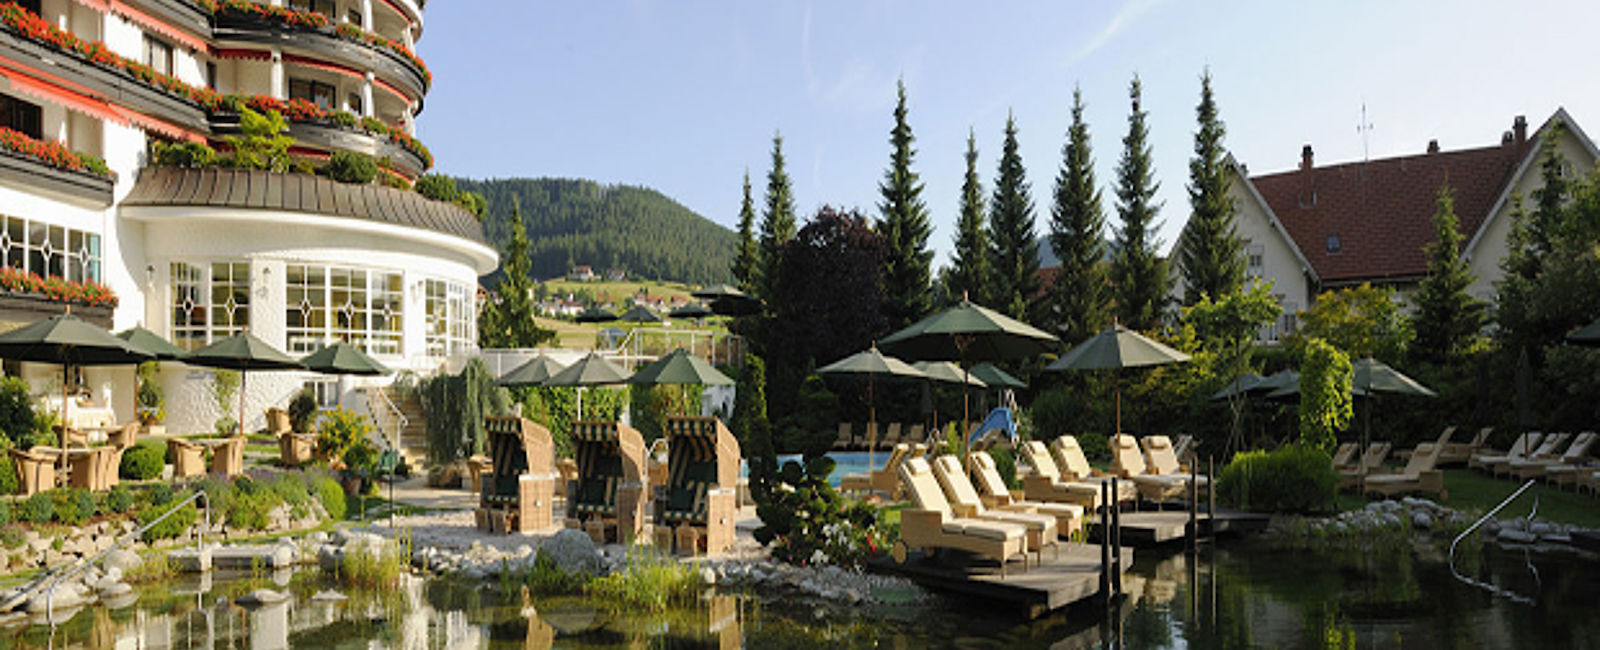 HOTEL TIPPS
 Hotel Bareiss 
 Genussvolles Gourmethotel im Schwarzwald 